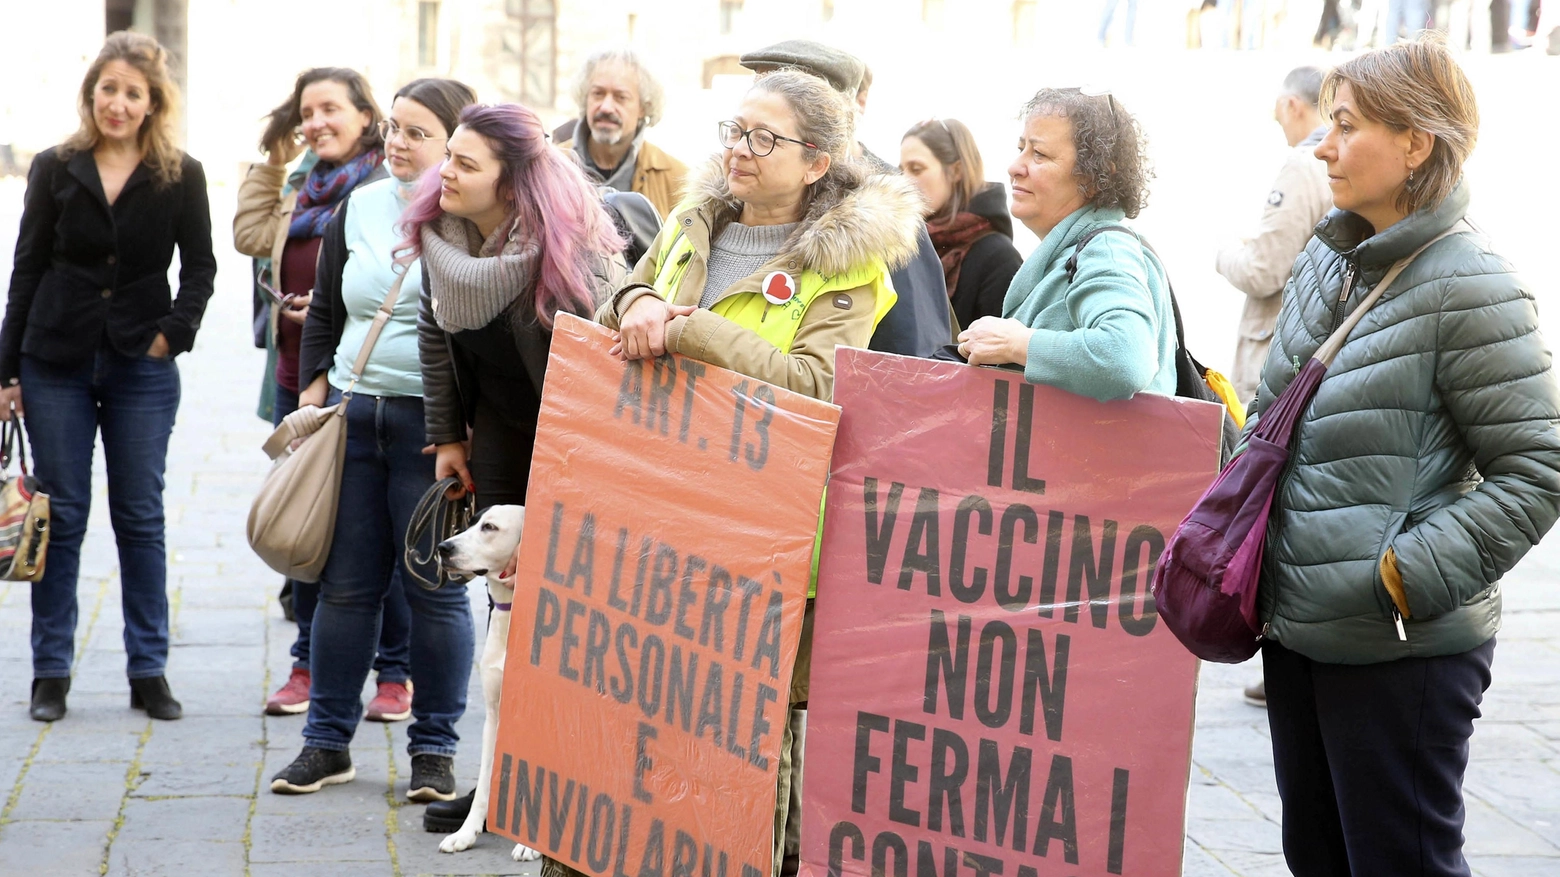 Dalla piazza al Palazzo  Il convegno ’no vax’  benedetto dal Comune  Imbarazzi e polemiche